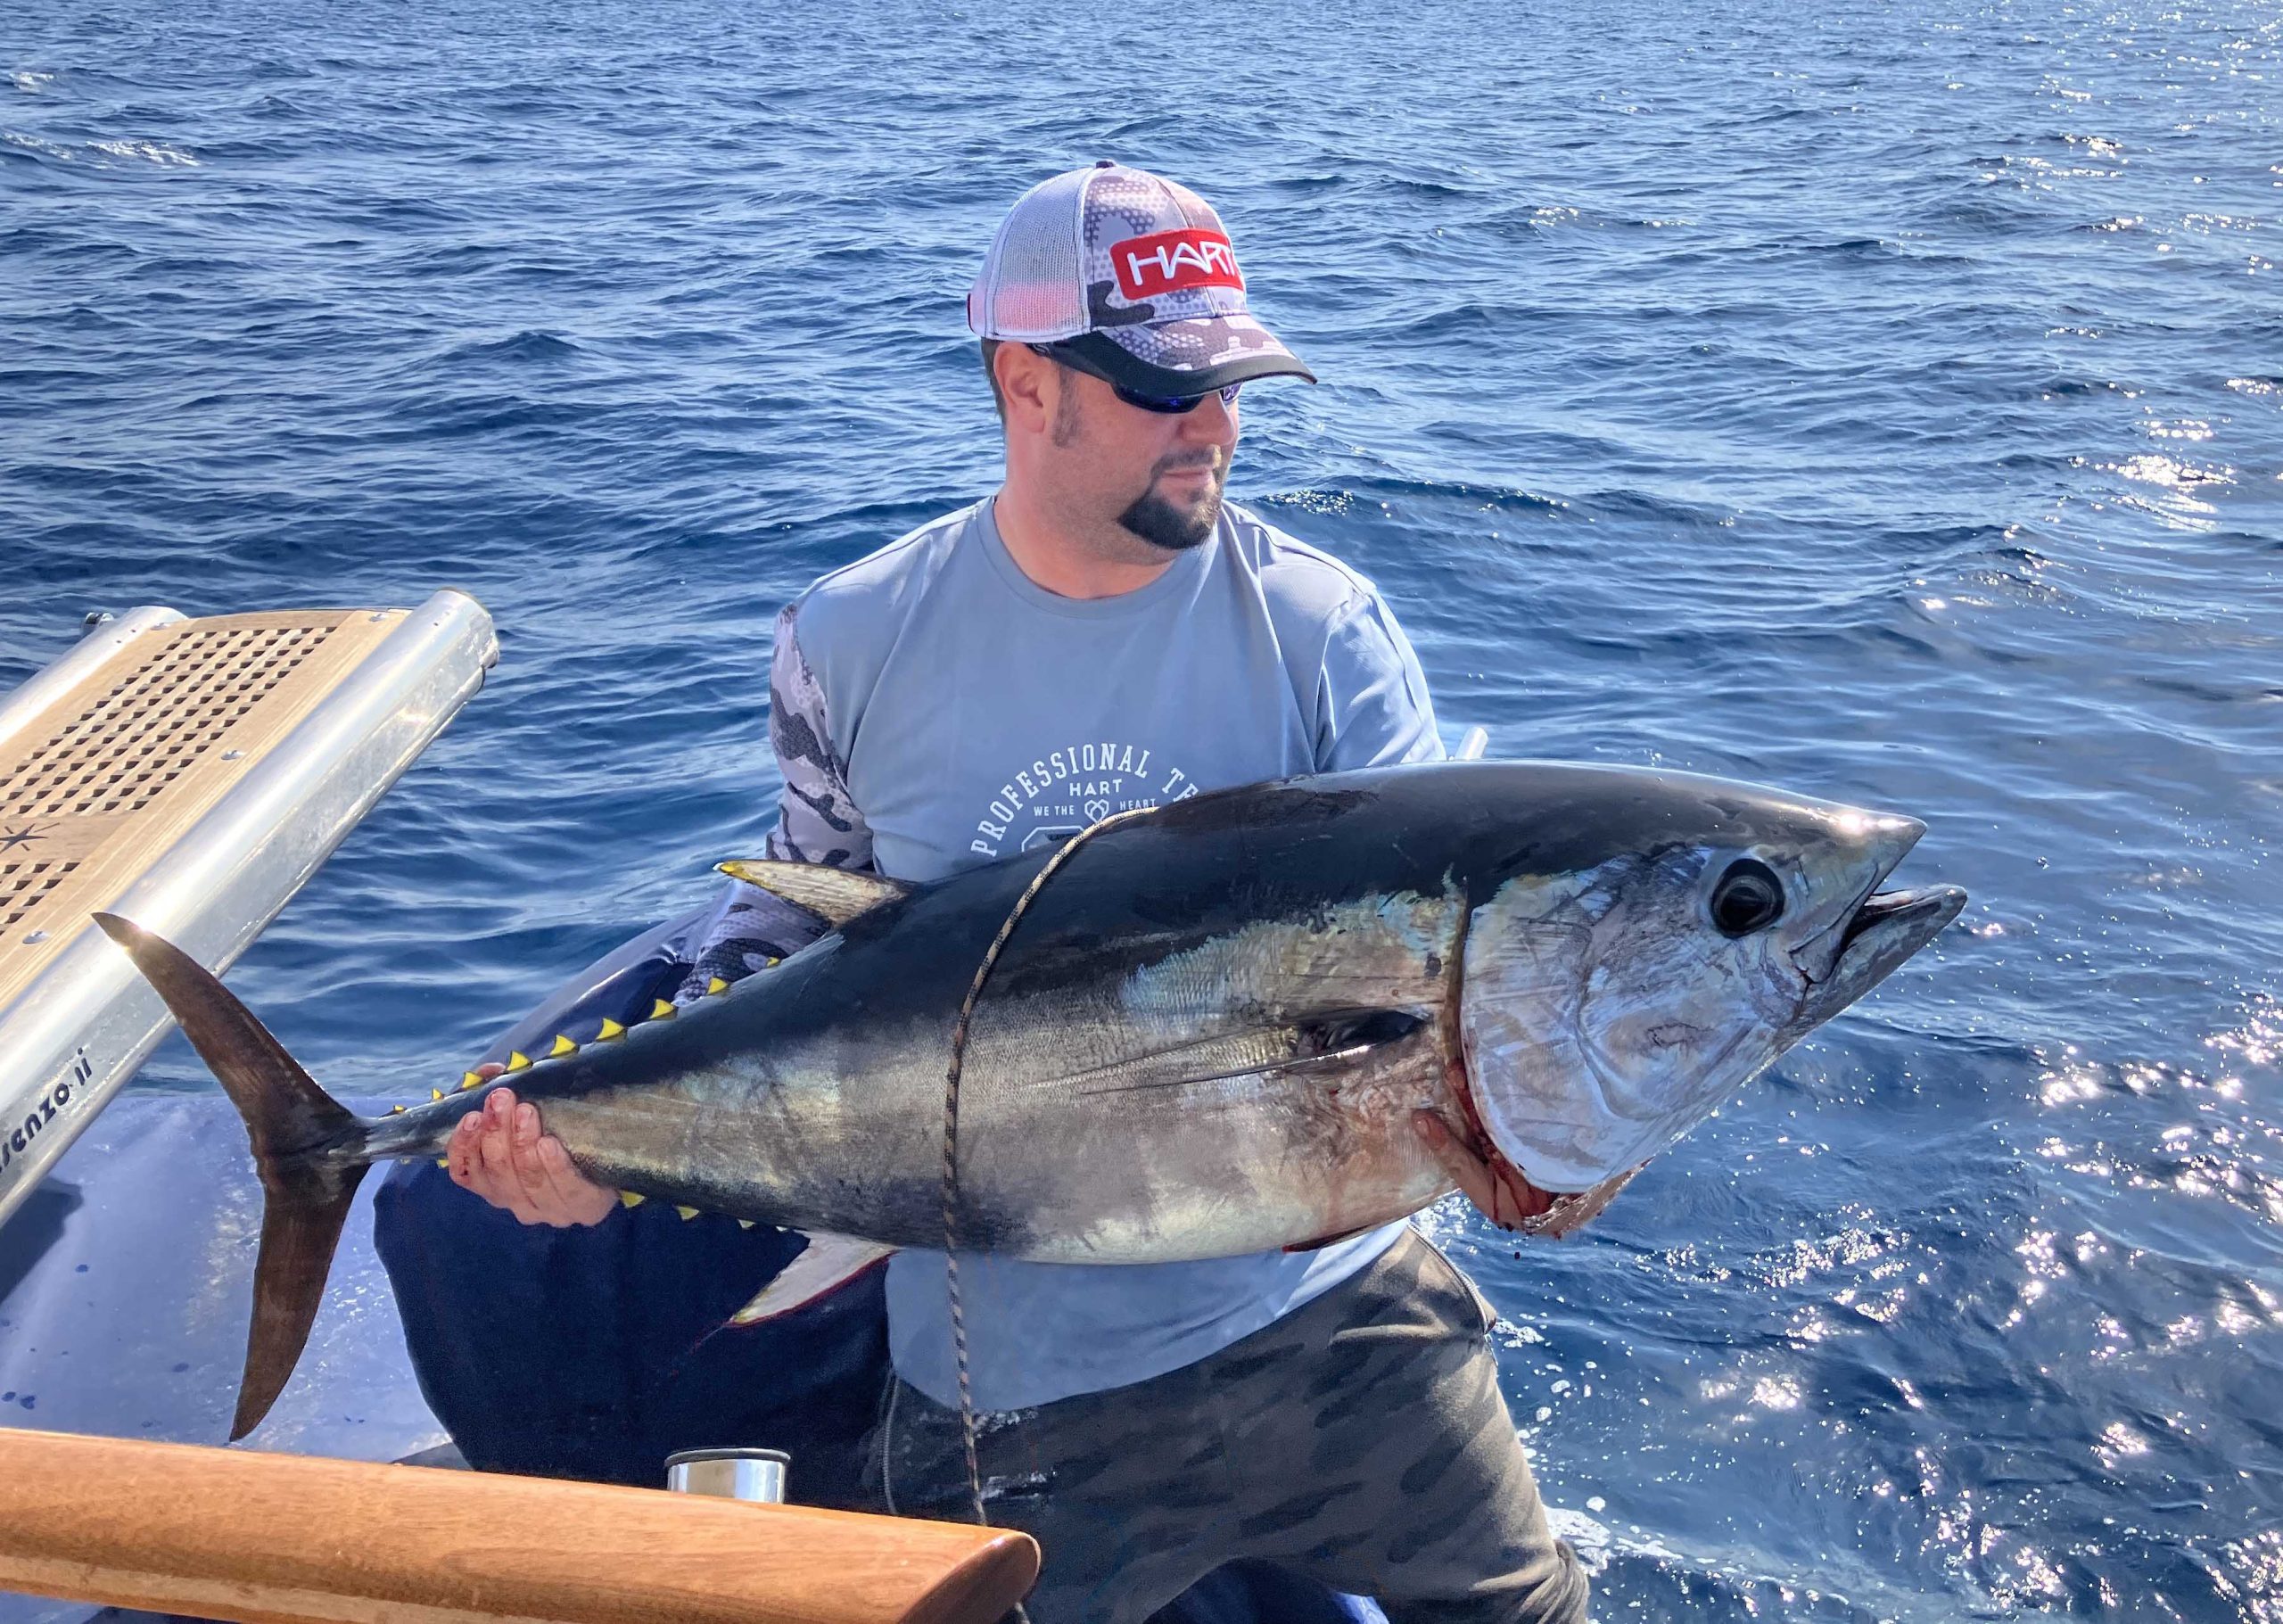 Riesen Tuna auf hoher See geangelt beim Big Game hochsee Ausflug